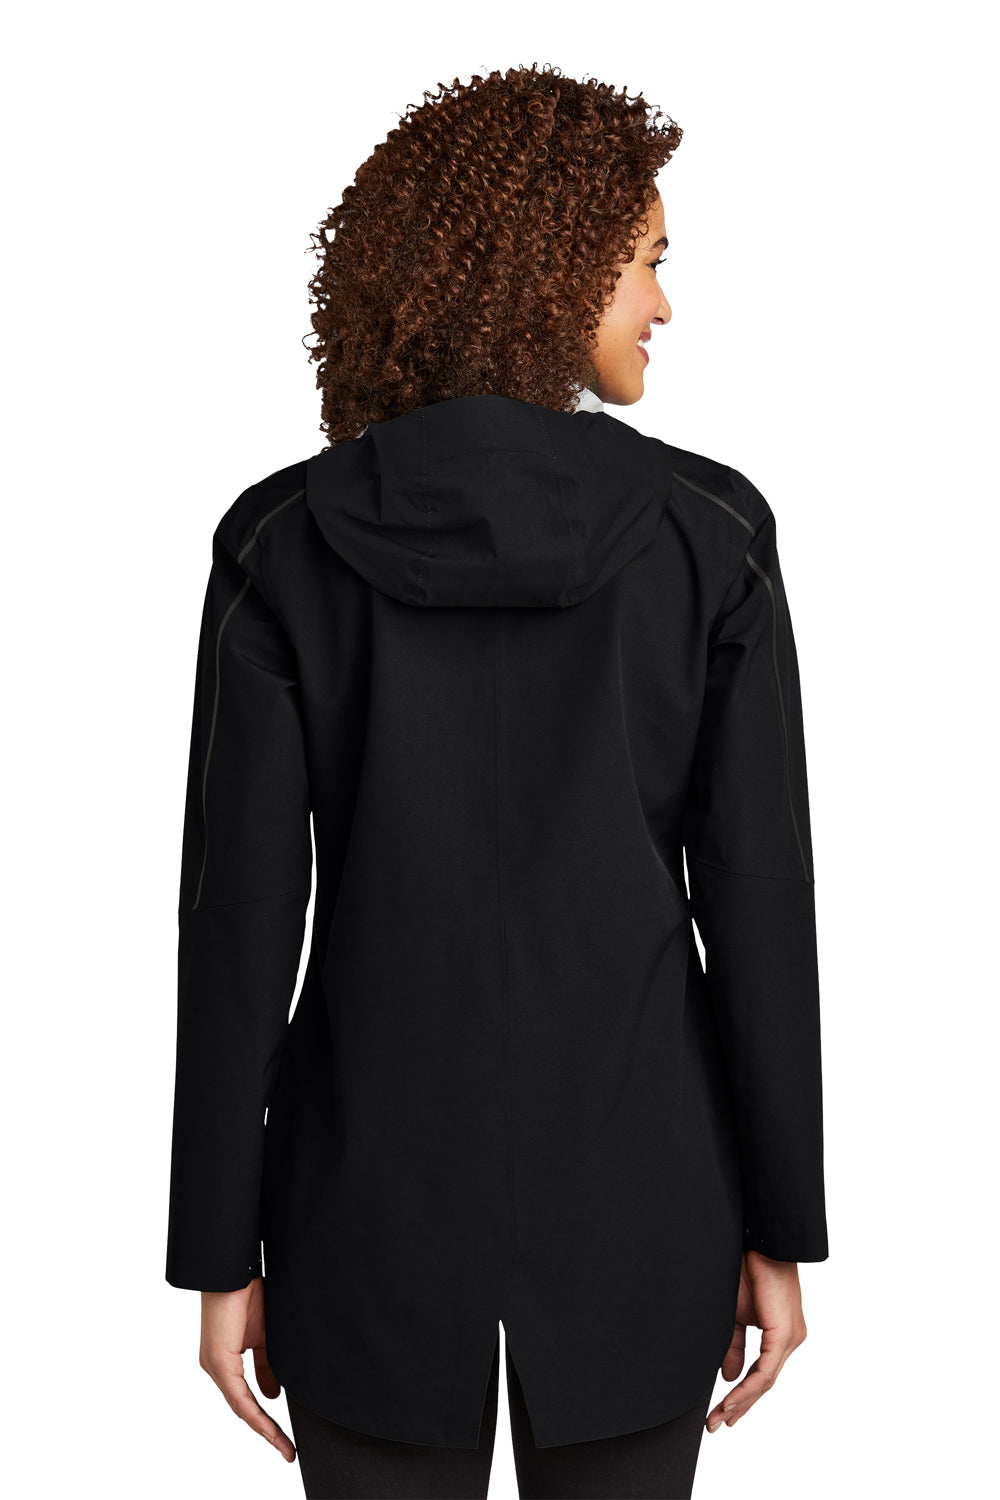 Ogio Womens Utilitarian Full Zip Hooded Jacket Blacktop Side